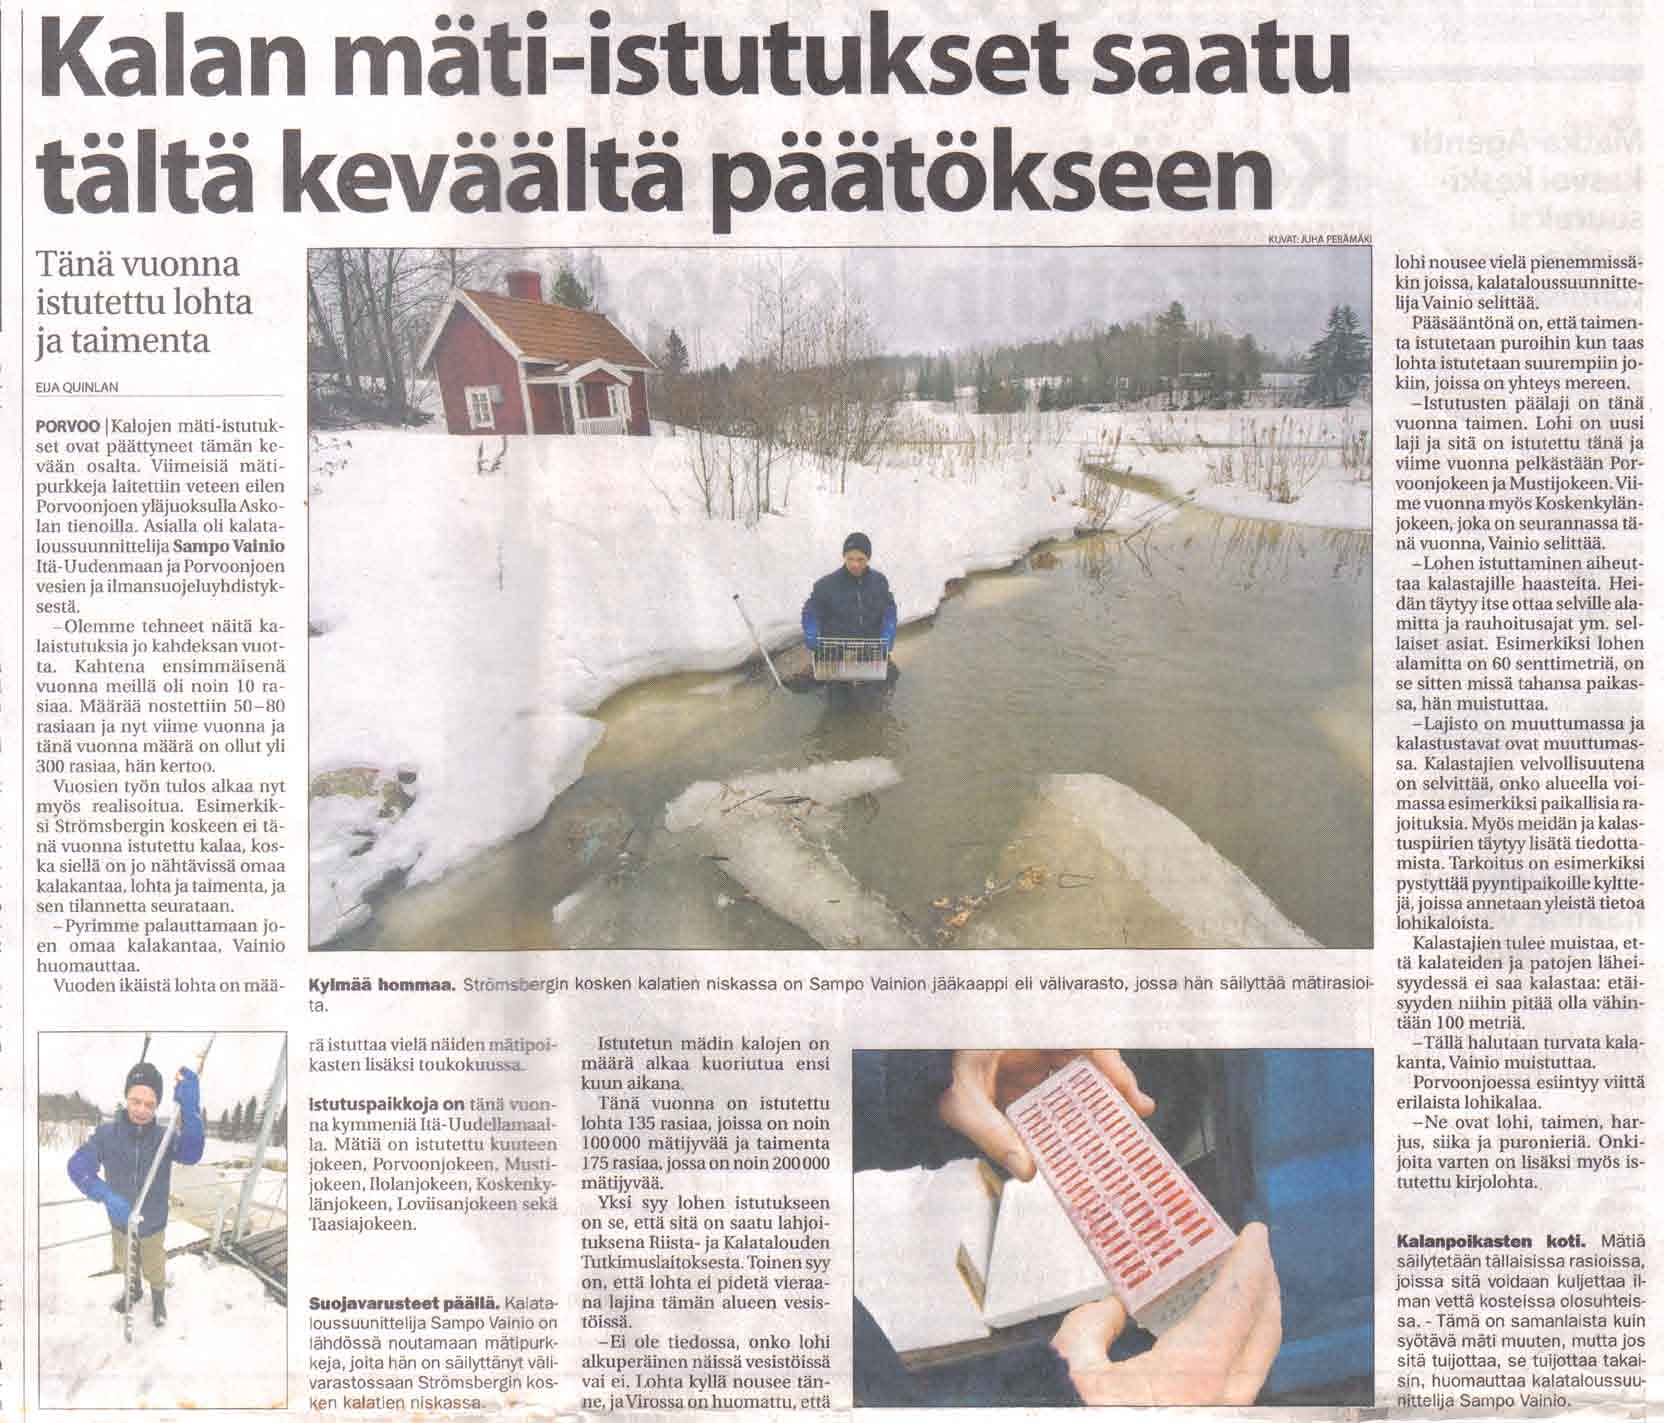 14 Mätirasiaistutus 2.1.3 Istutusmäärät ja rahoittajat Lohikalaa Suomenlahdelta Salpausselälle -hanke istutti vuosittain 8-20 litraa taimenen mätijyviä, laskennallisesti 60 000-250 000 kappaletta vuosittain.